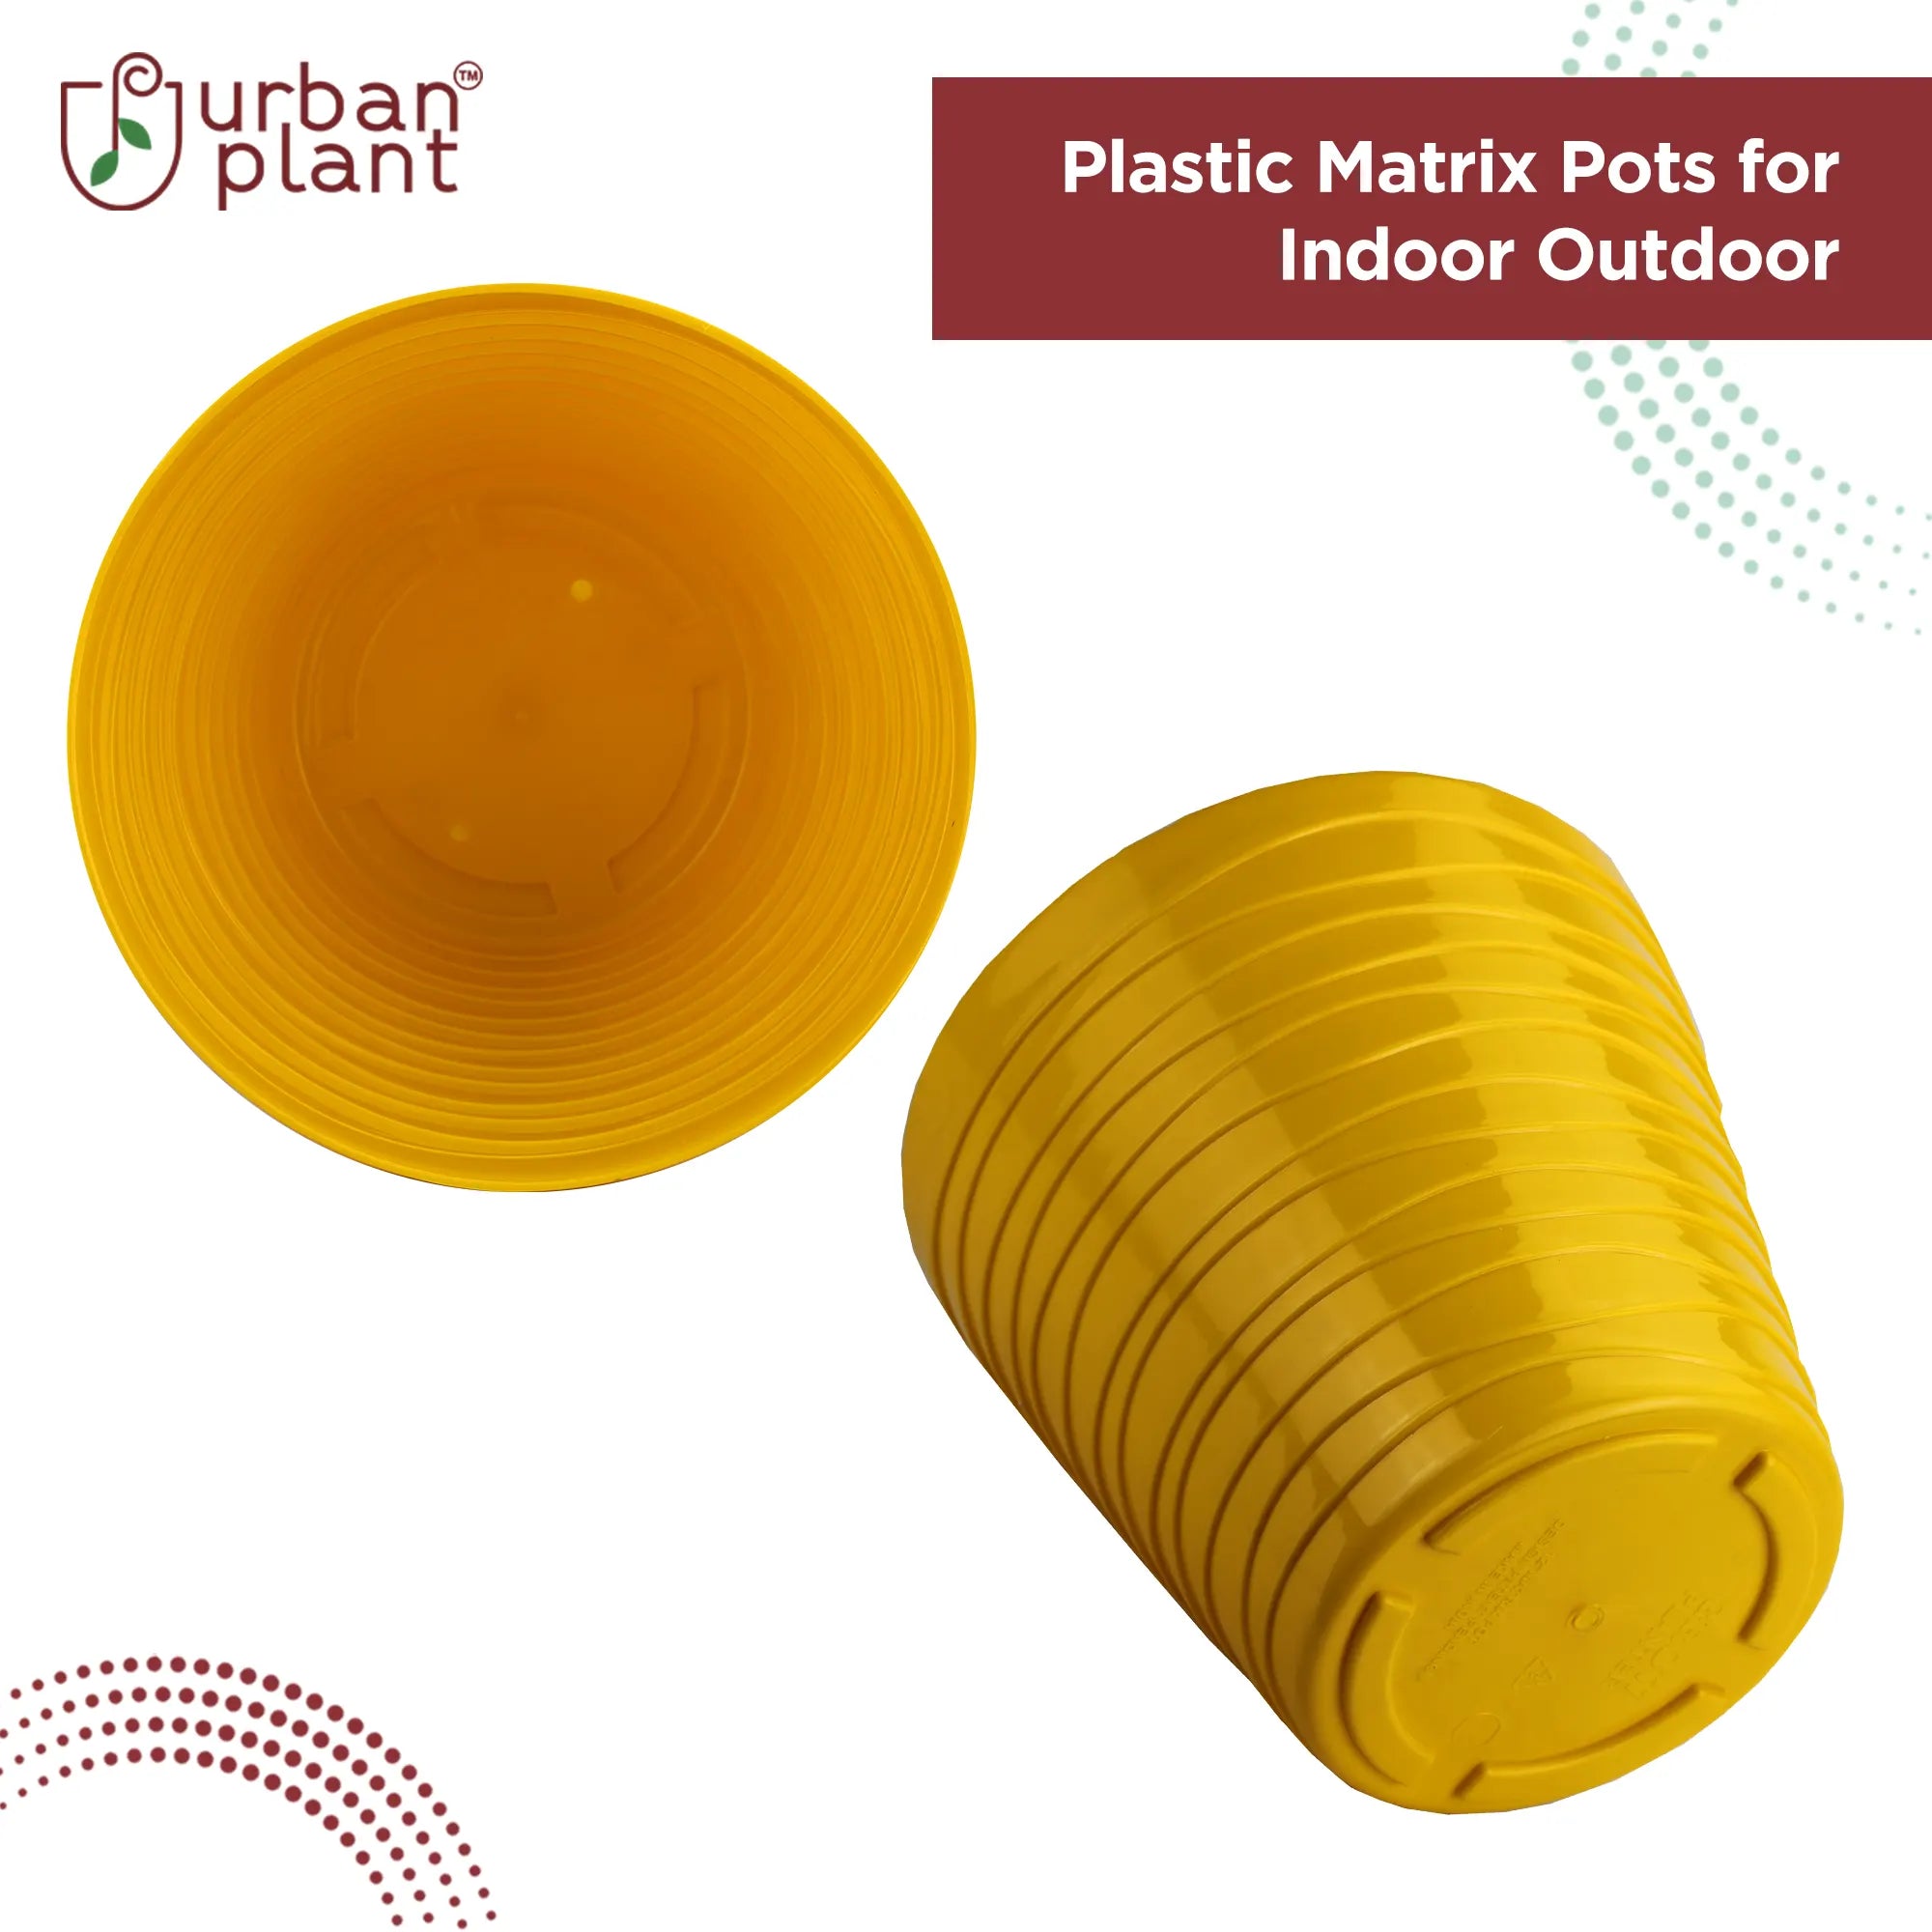 Plastic Matrix Pots Set of 3 Urban Plant 